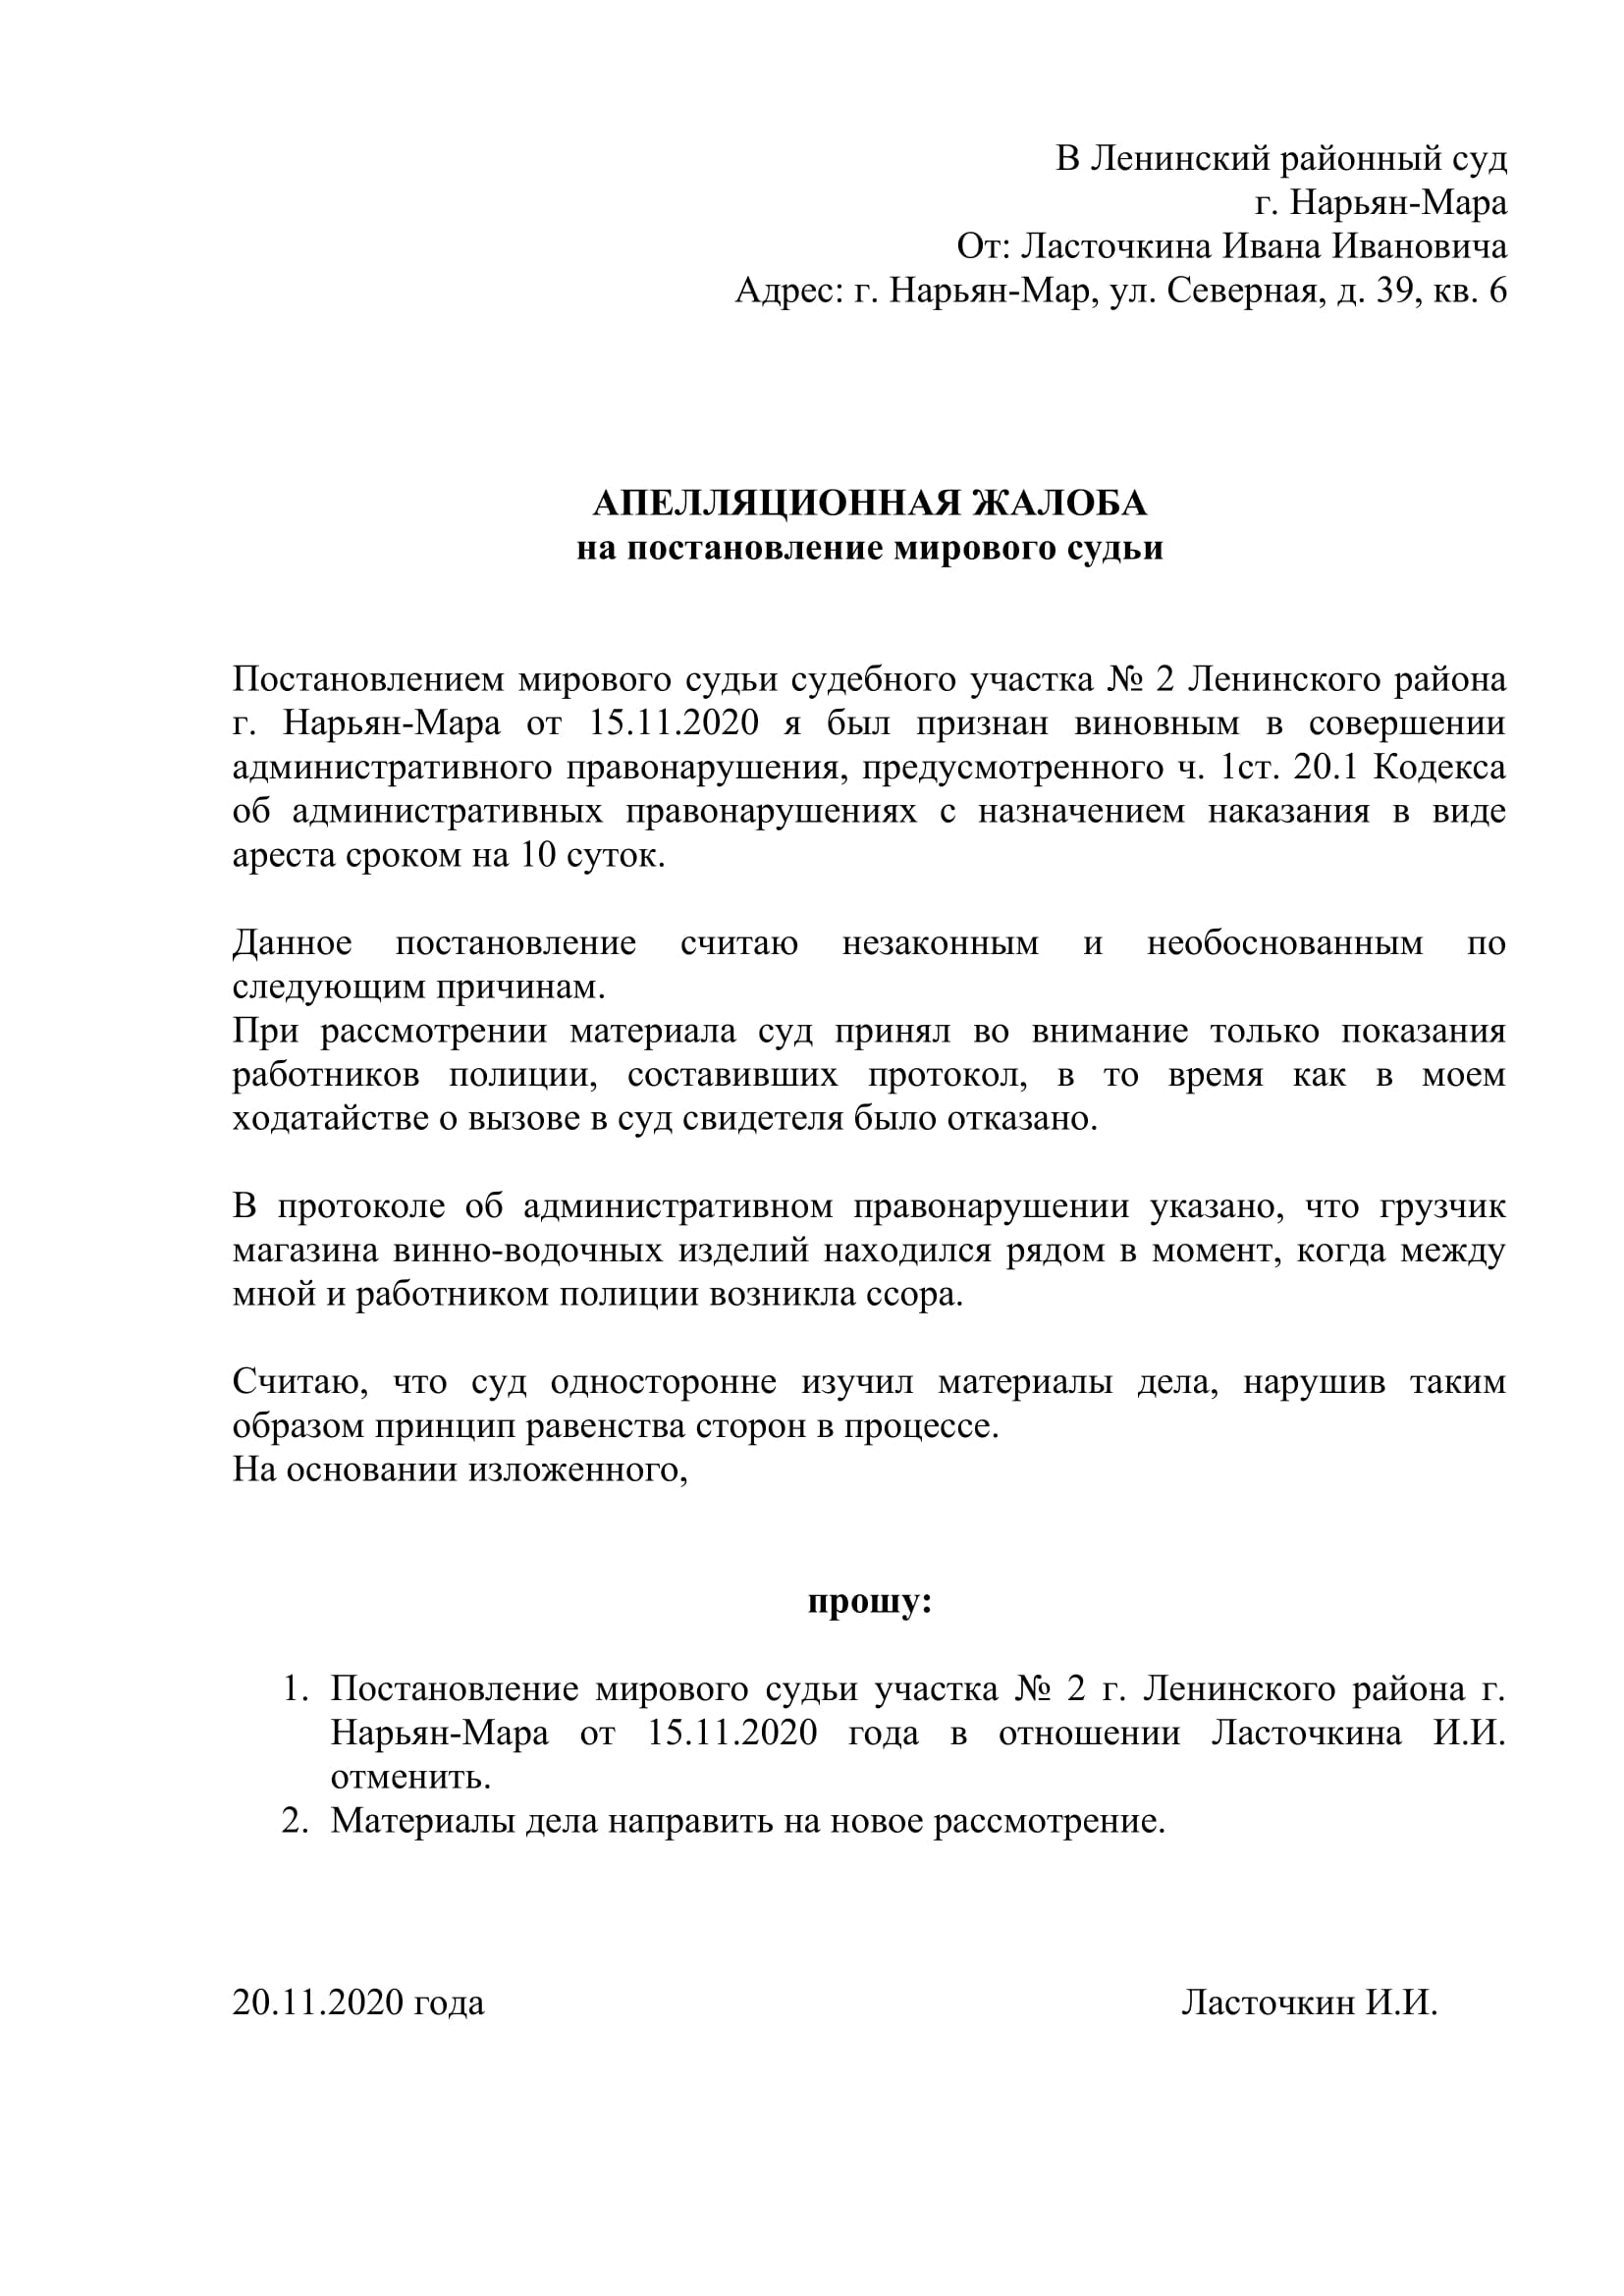 Жалоба на постановление Мирового судьи по ч.4 ст.12.15 КоАП РФ